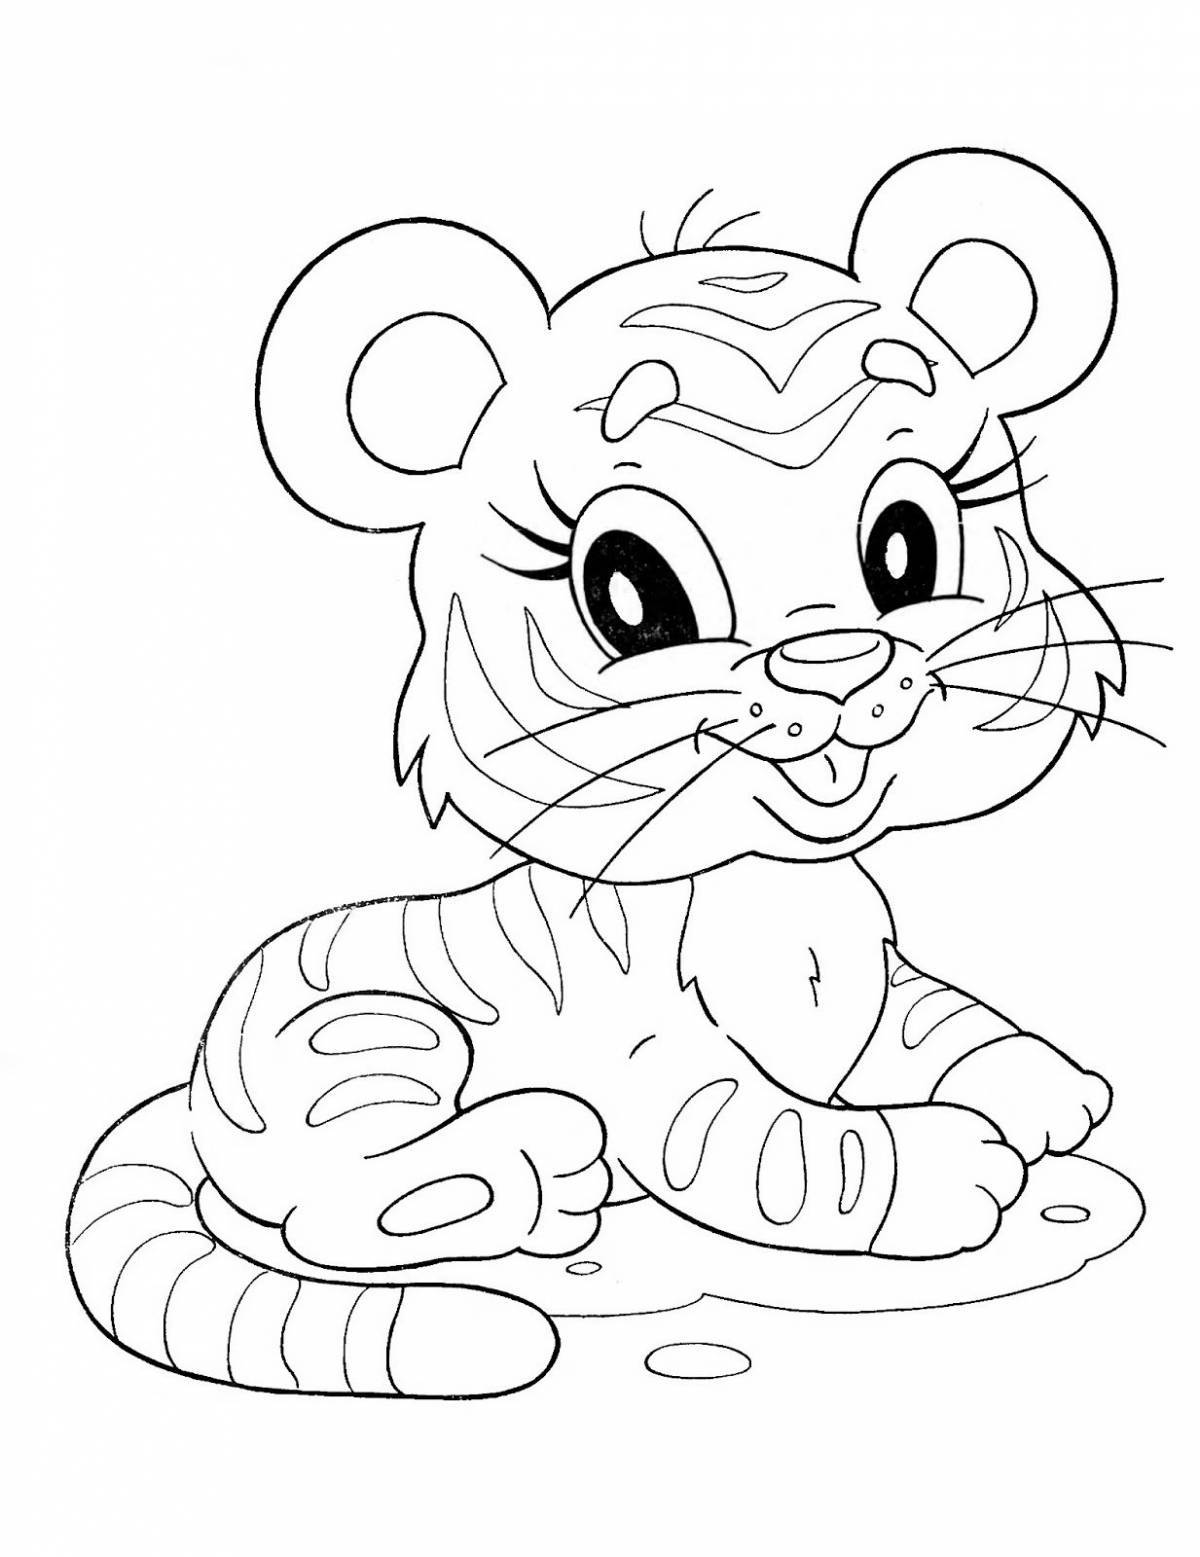 Coloring book charming tiger cub